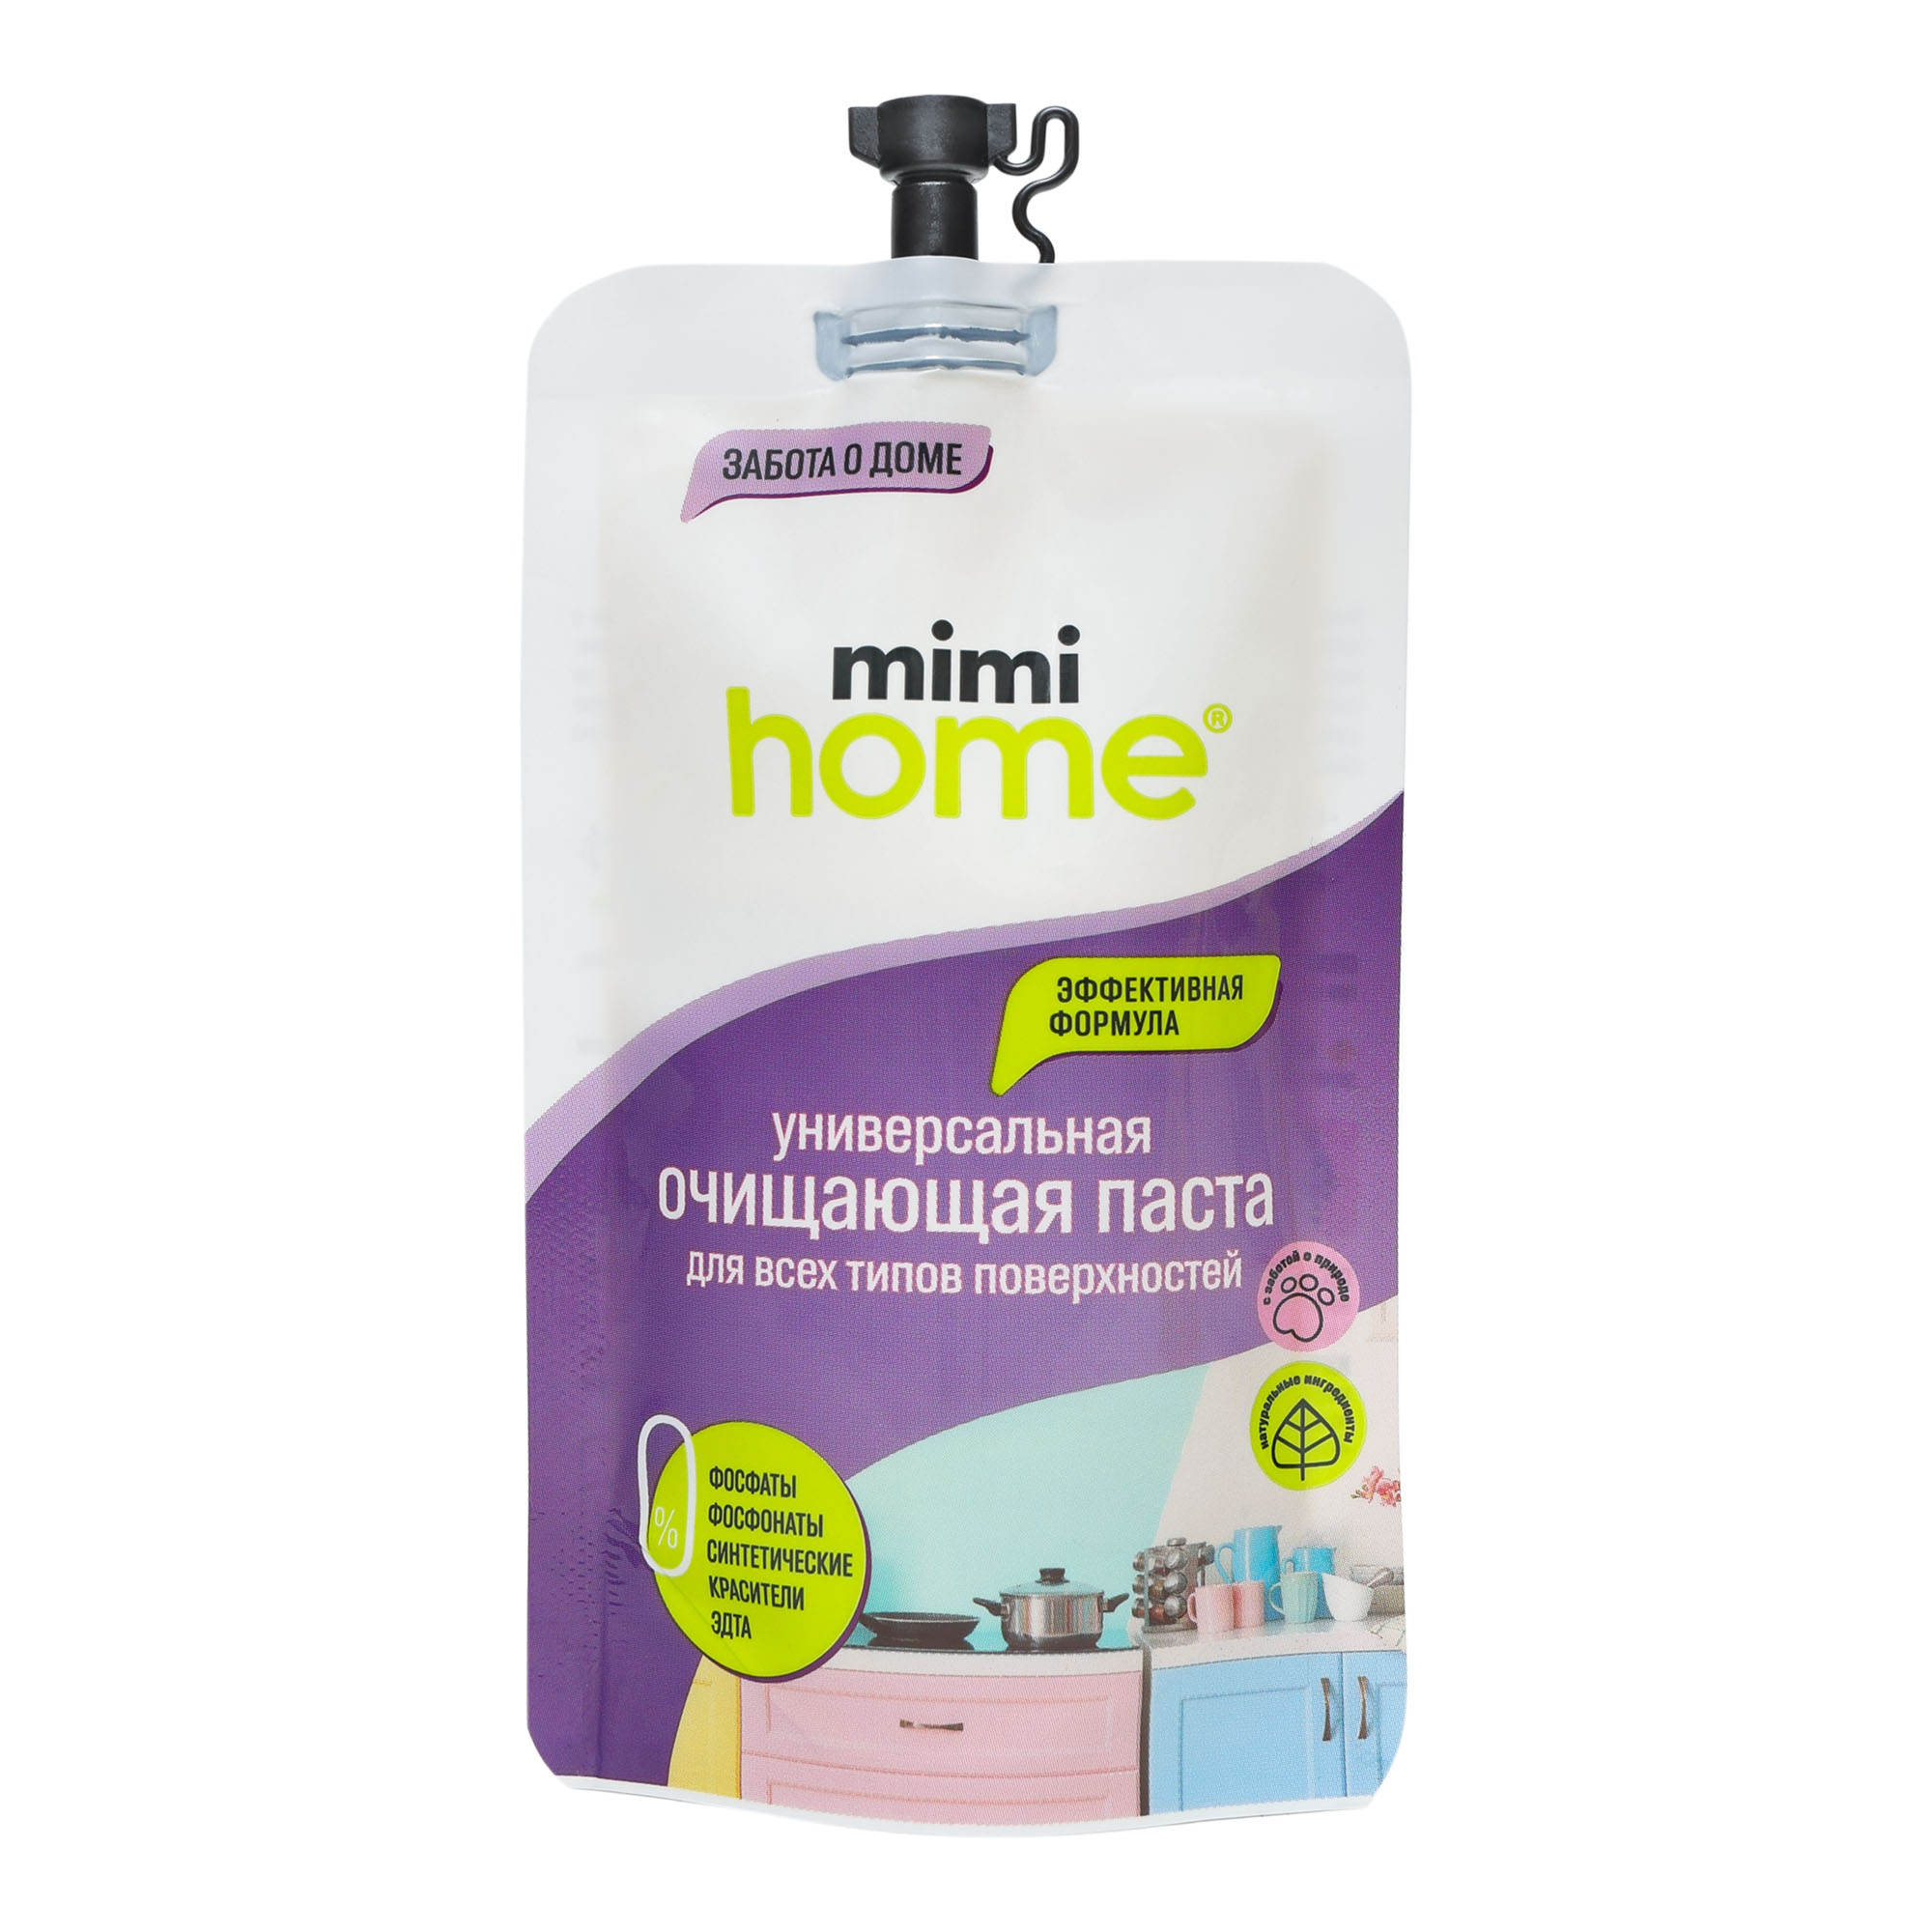 Чистящее средство Mimi Home для всех видов поверхностей 100 мл универсальное чистящее cредство domestos ультра блеск 1 5 литра